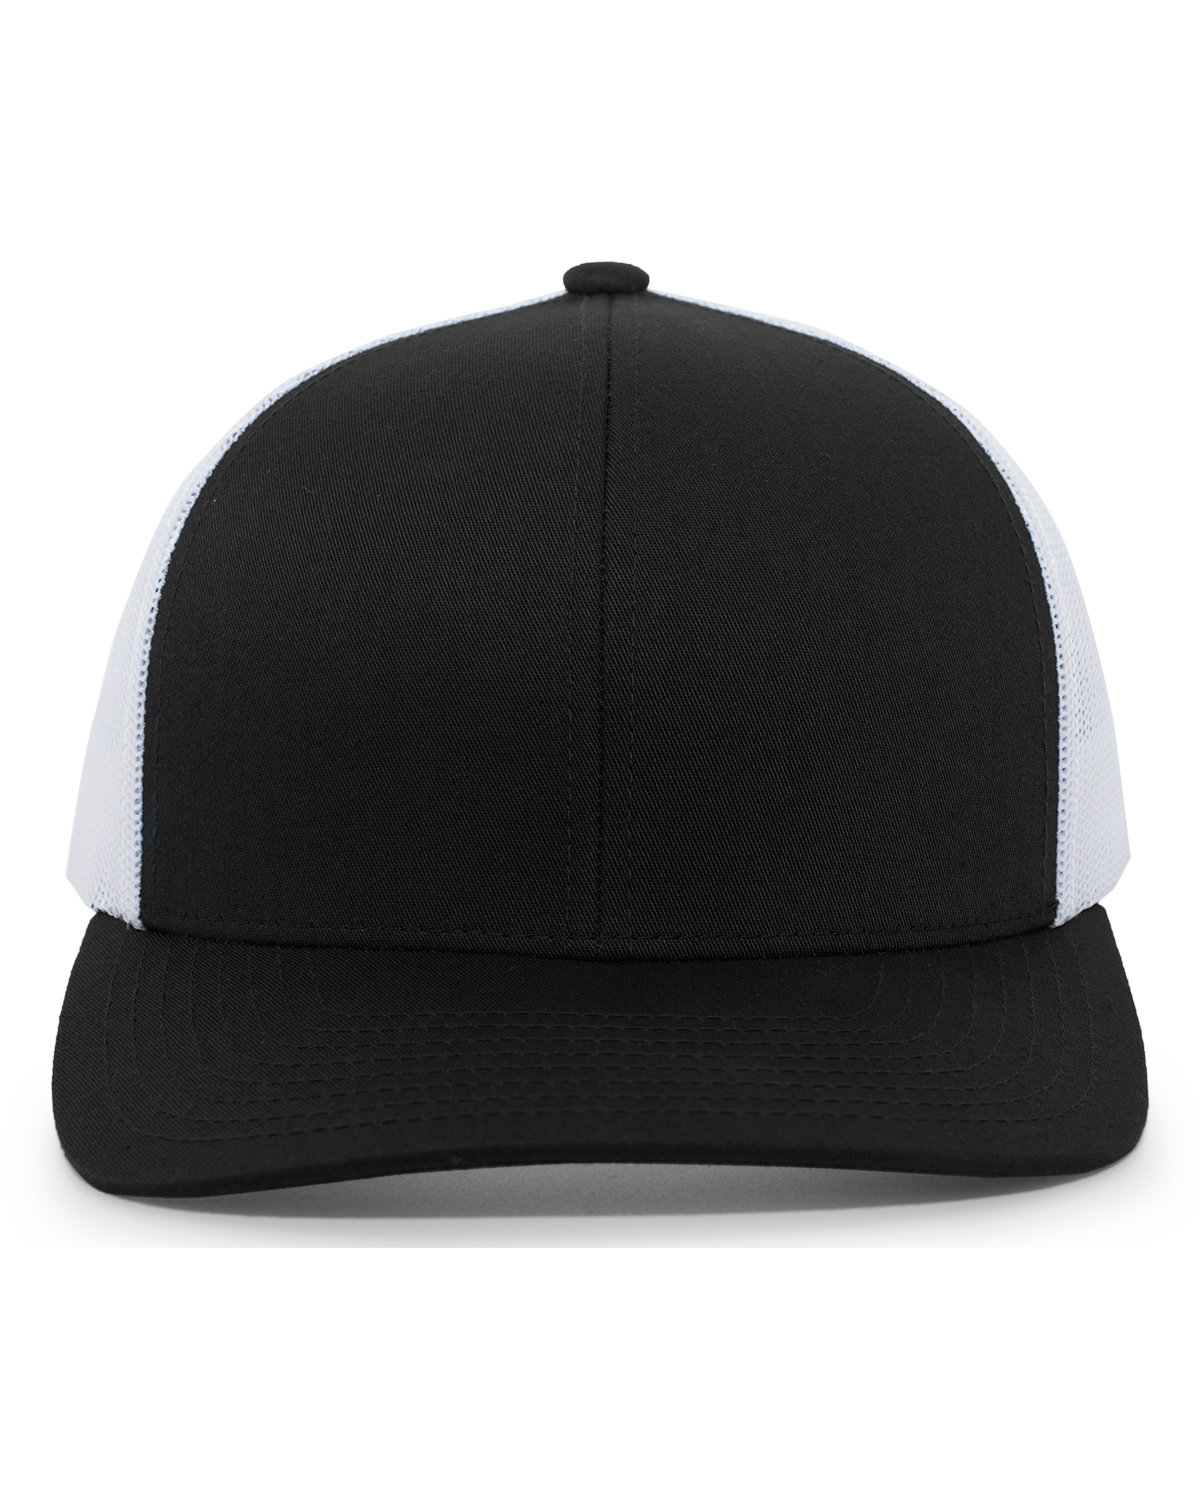 Pacific Headwear Trucker Snapback Hat BLACK/ WHITE 